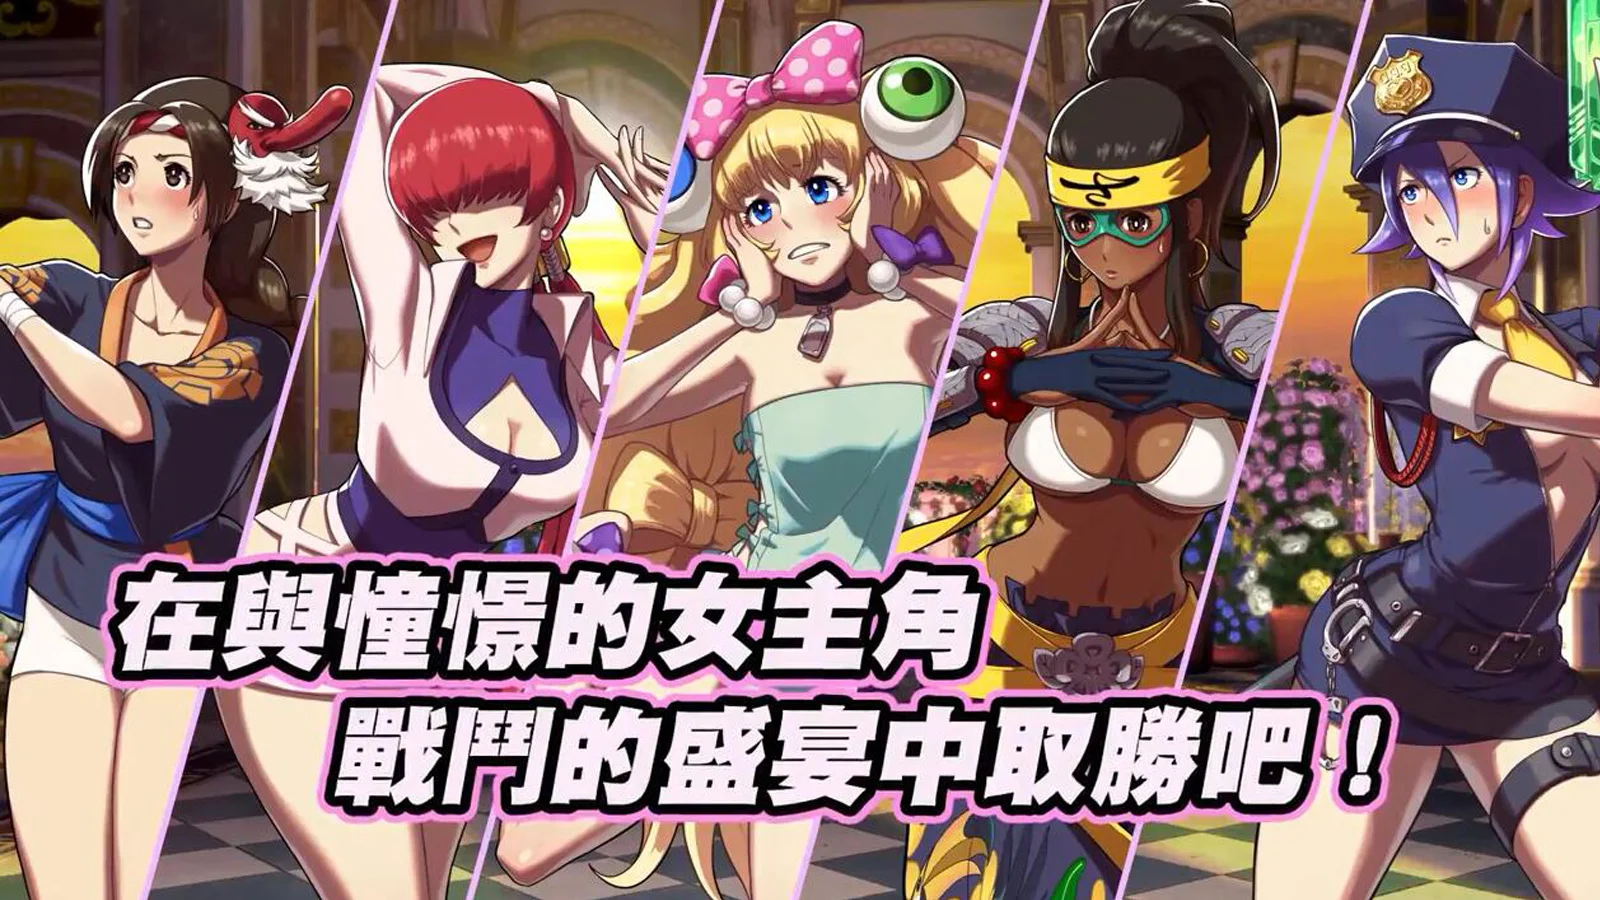 《SNK HEROINES Tag Team Frenzy》公开中文预告,9月6日发售